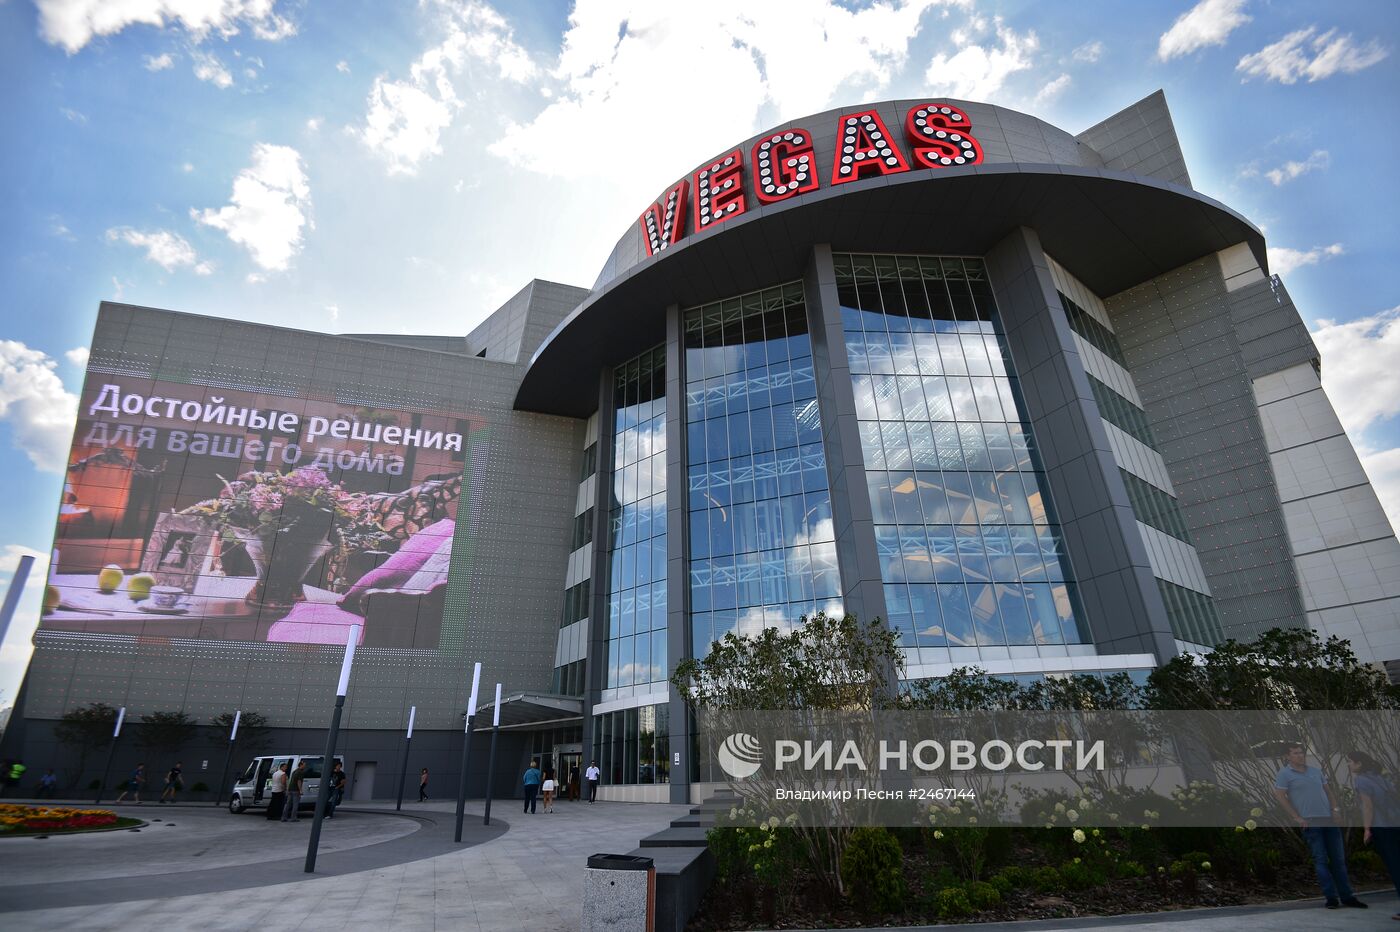 Новый ТРК Vegas Крокус Сити в Мякининской пойме